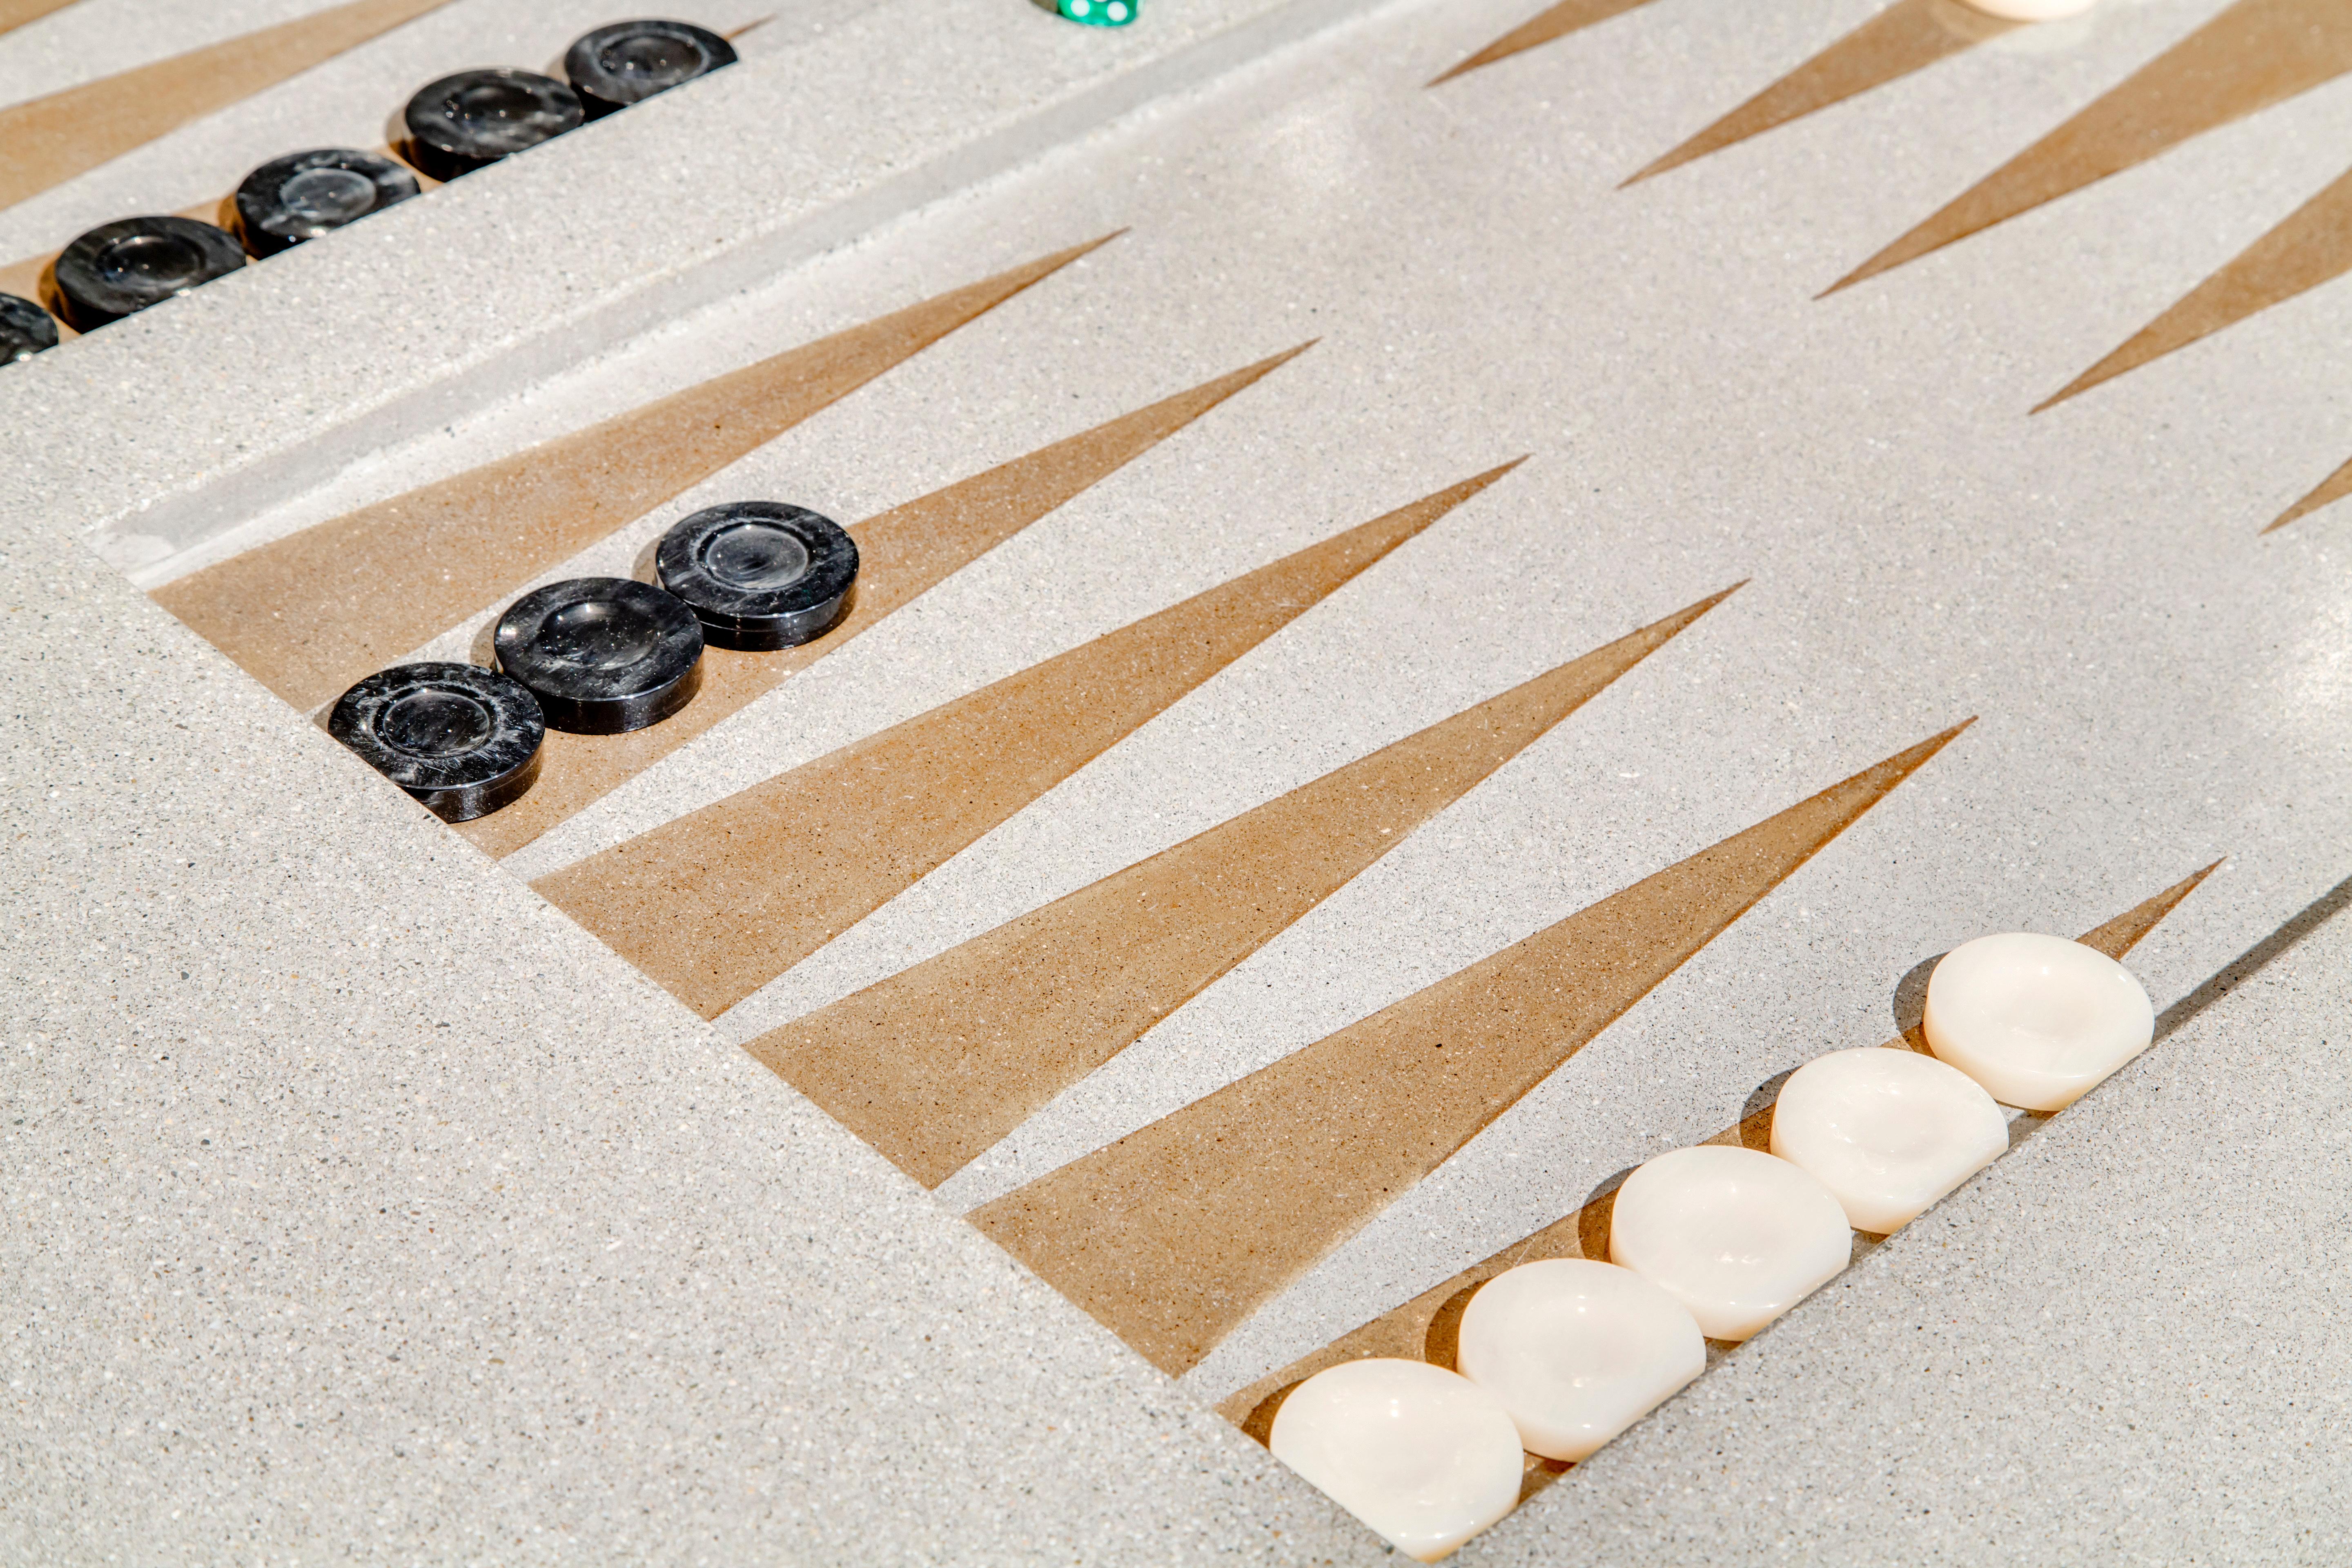 Backgammonspieltisch aus Beton von James de Wulf.  Jeder Tisch wird nach Maß für den Innen- und Außenbereich gefertigt. Der Tisch ist versiegelt und gewachst, was ihm einen einzigartigen Glanz verleiht. 

Der Tisch entwickelt mit der Zeit eine